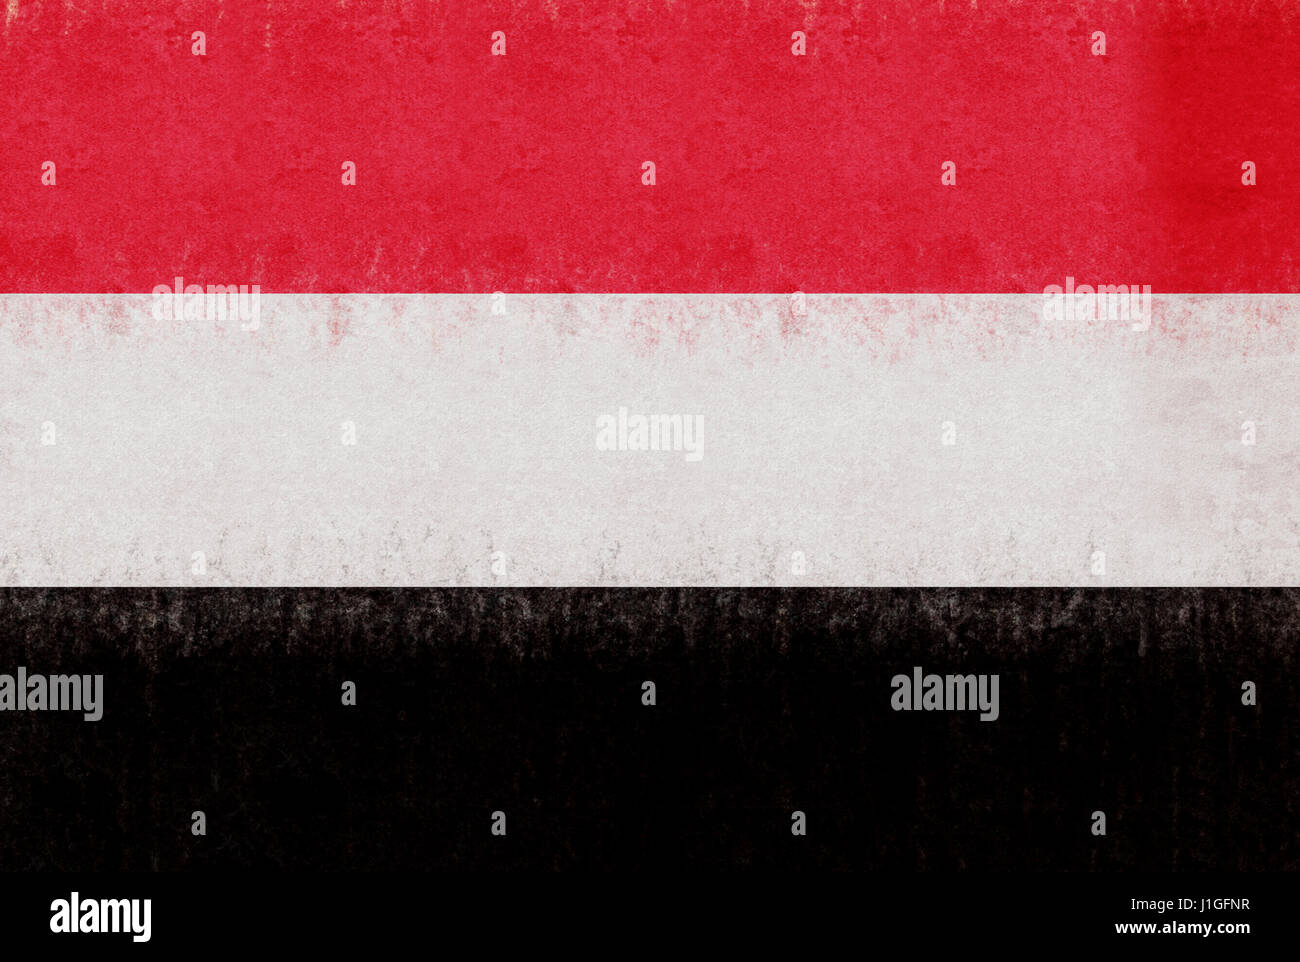 Abbildung der Flagge des Jemen mit einem Grunge-Look. Stockfoto